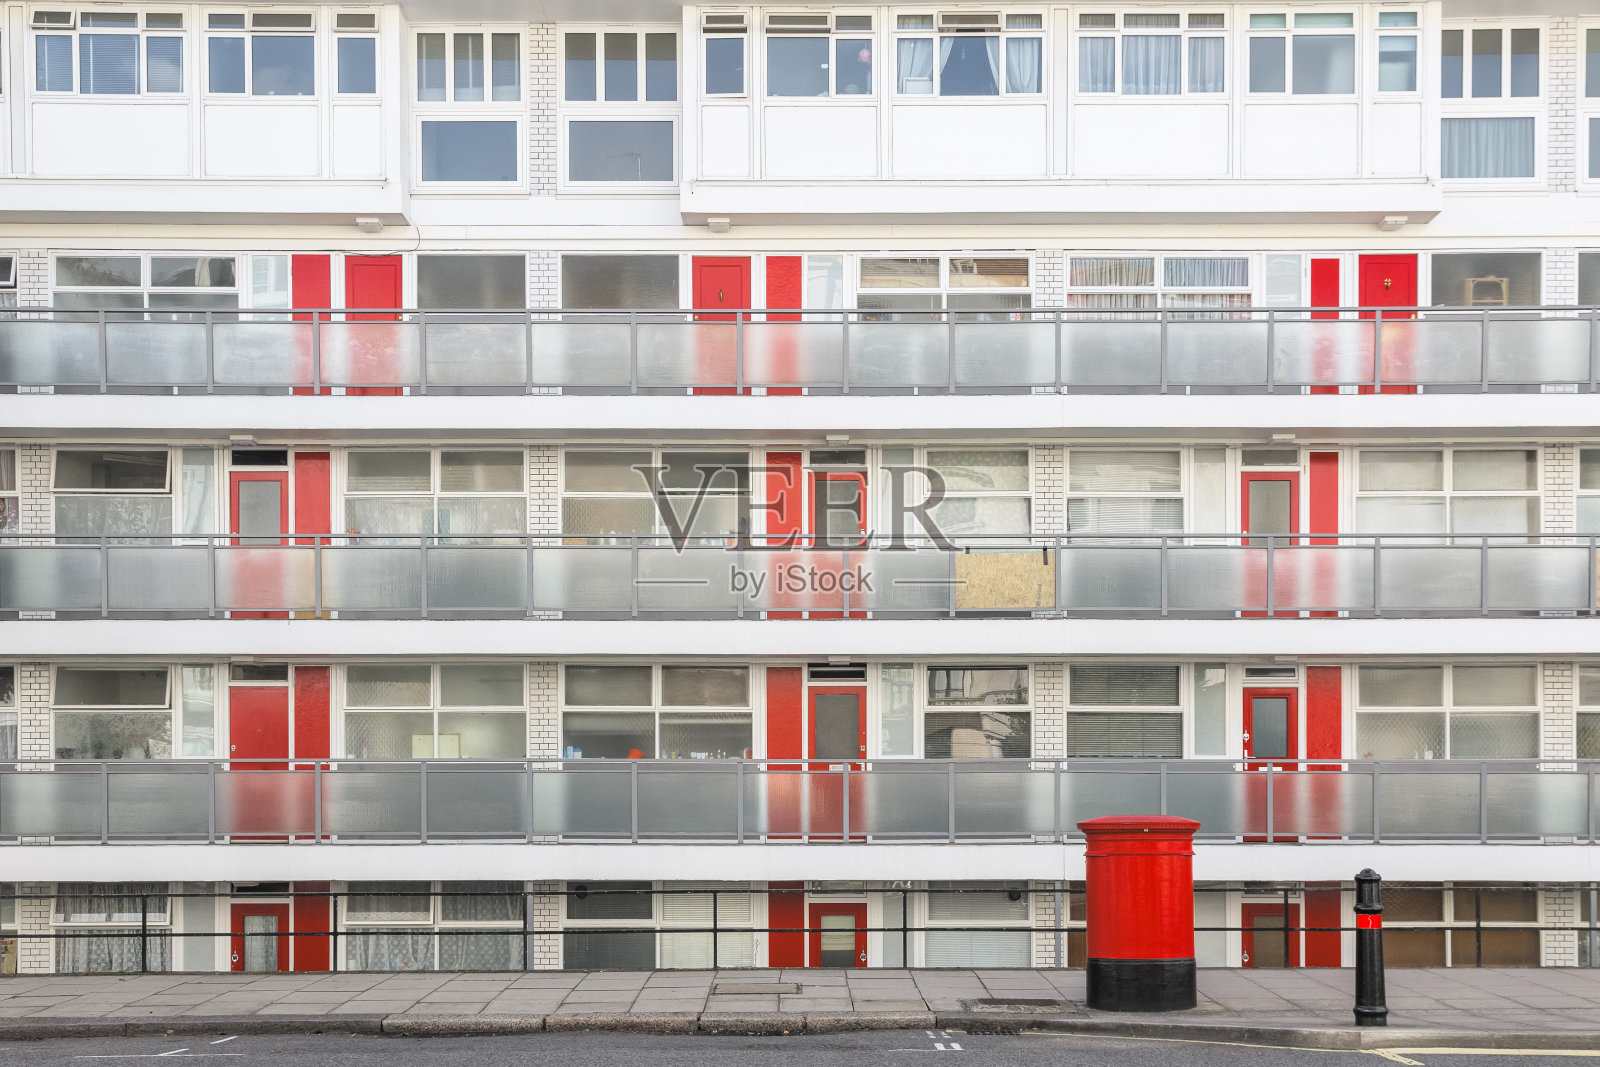 这是伦敦一座市政住宅区的正面照片摄影图片